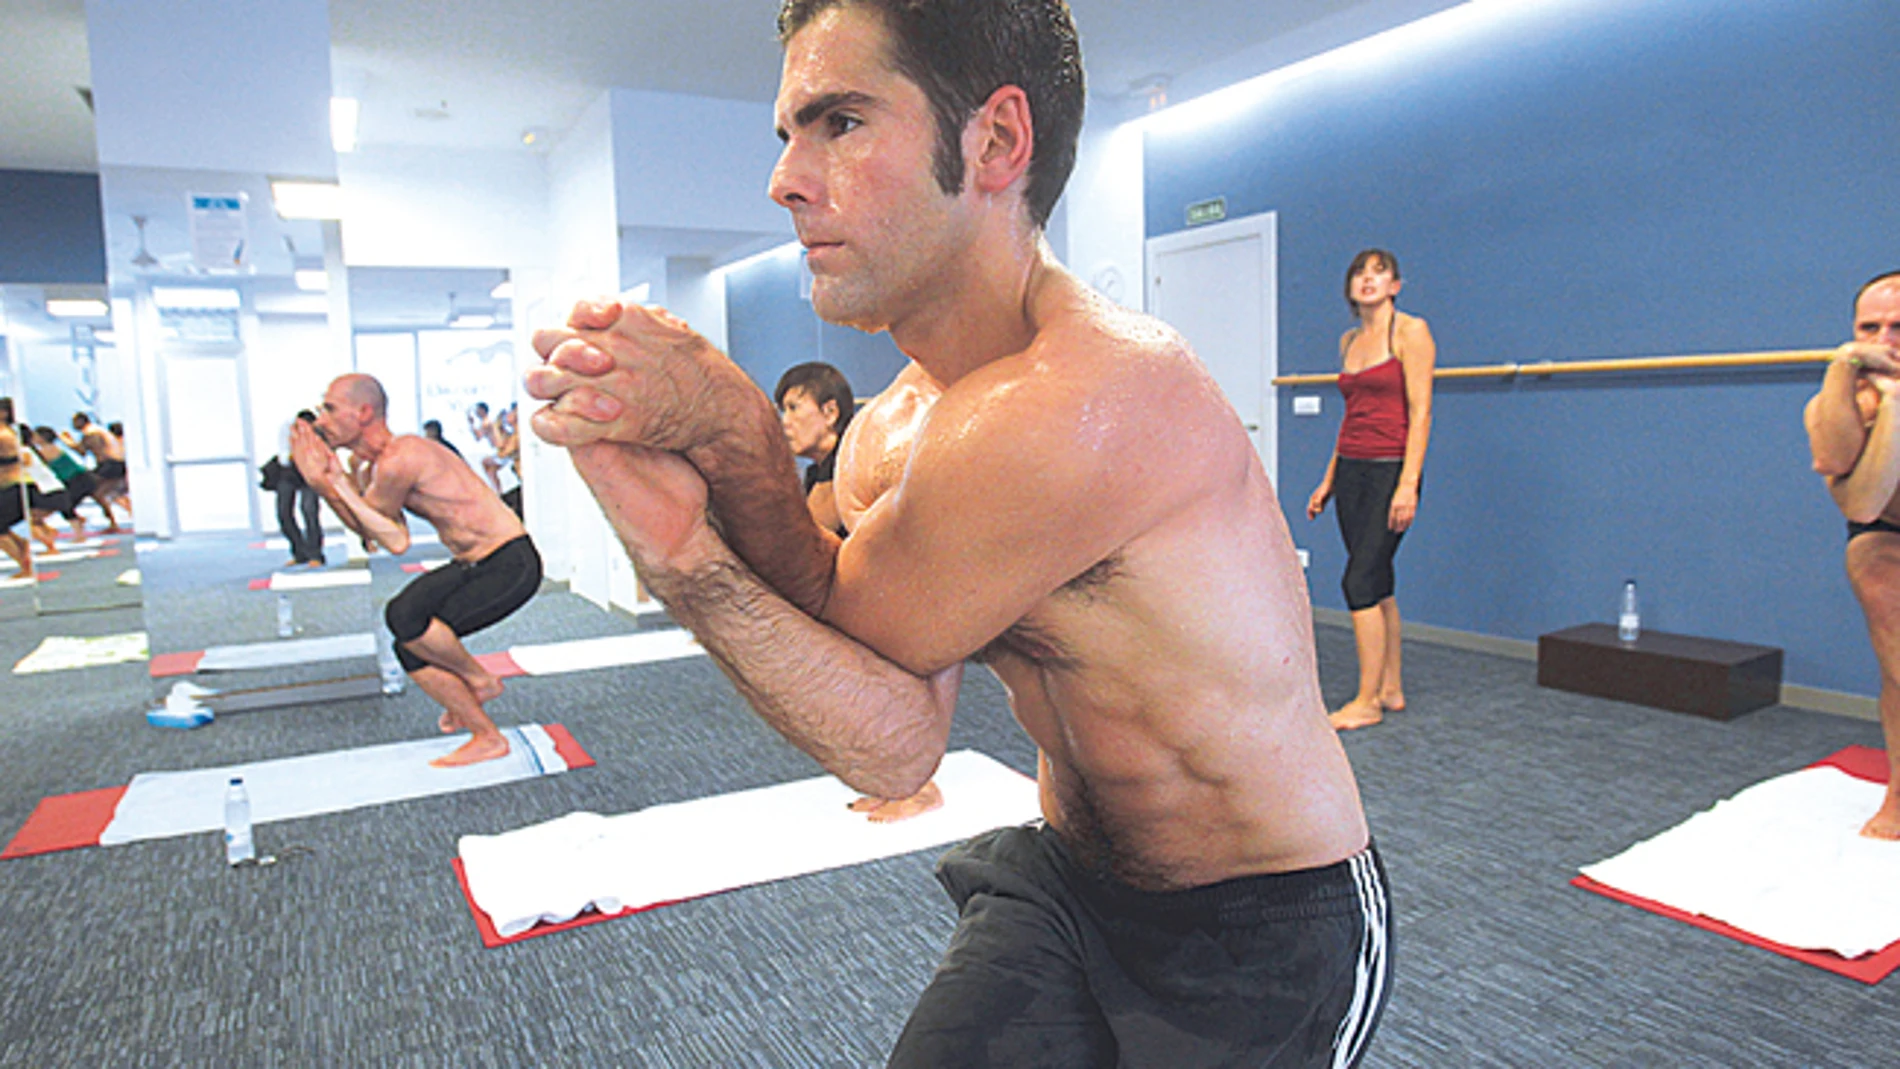 Bikram yoga: entrenar cuerpo y mente a 40 grados